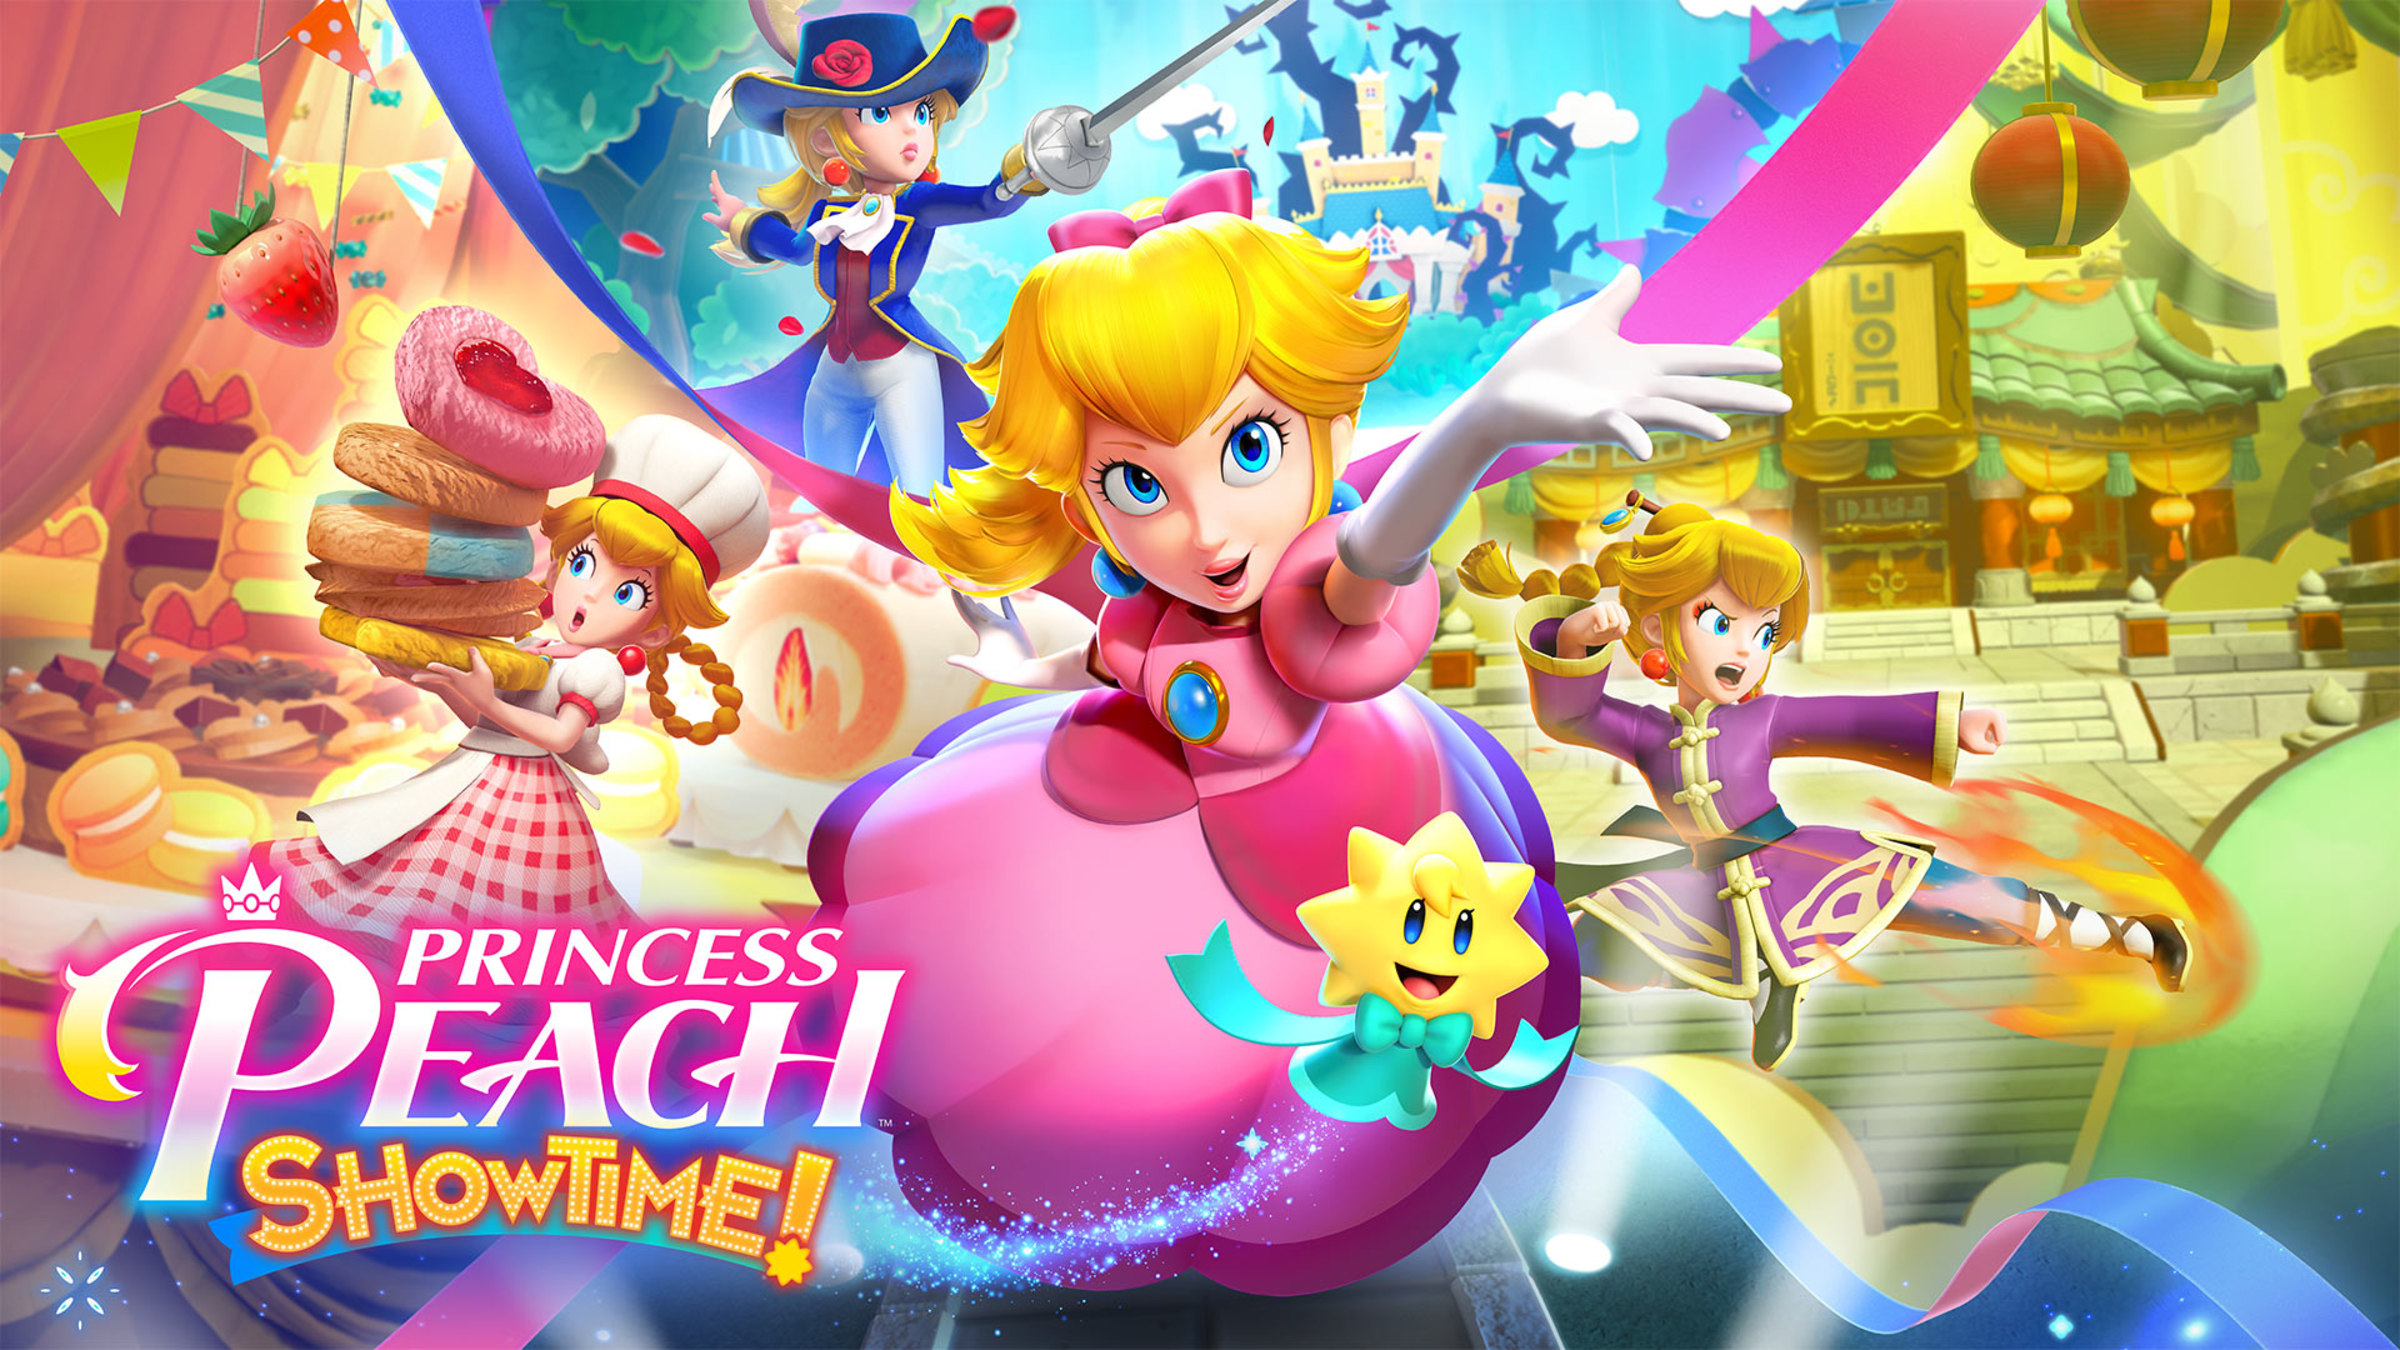 Подробнее о статье Princess Peach: Showtime! получила возрастной рейтинг ESRB "E10+" в преддверии мартовского релиза